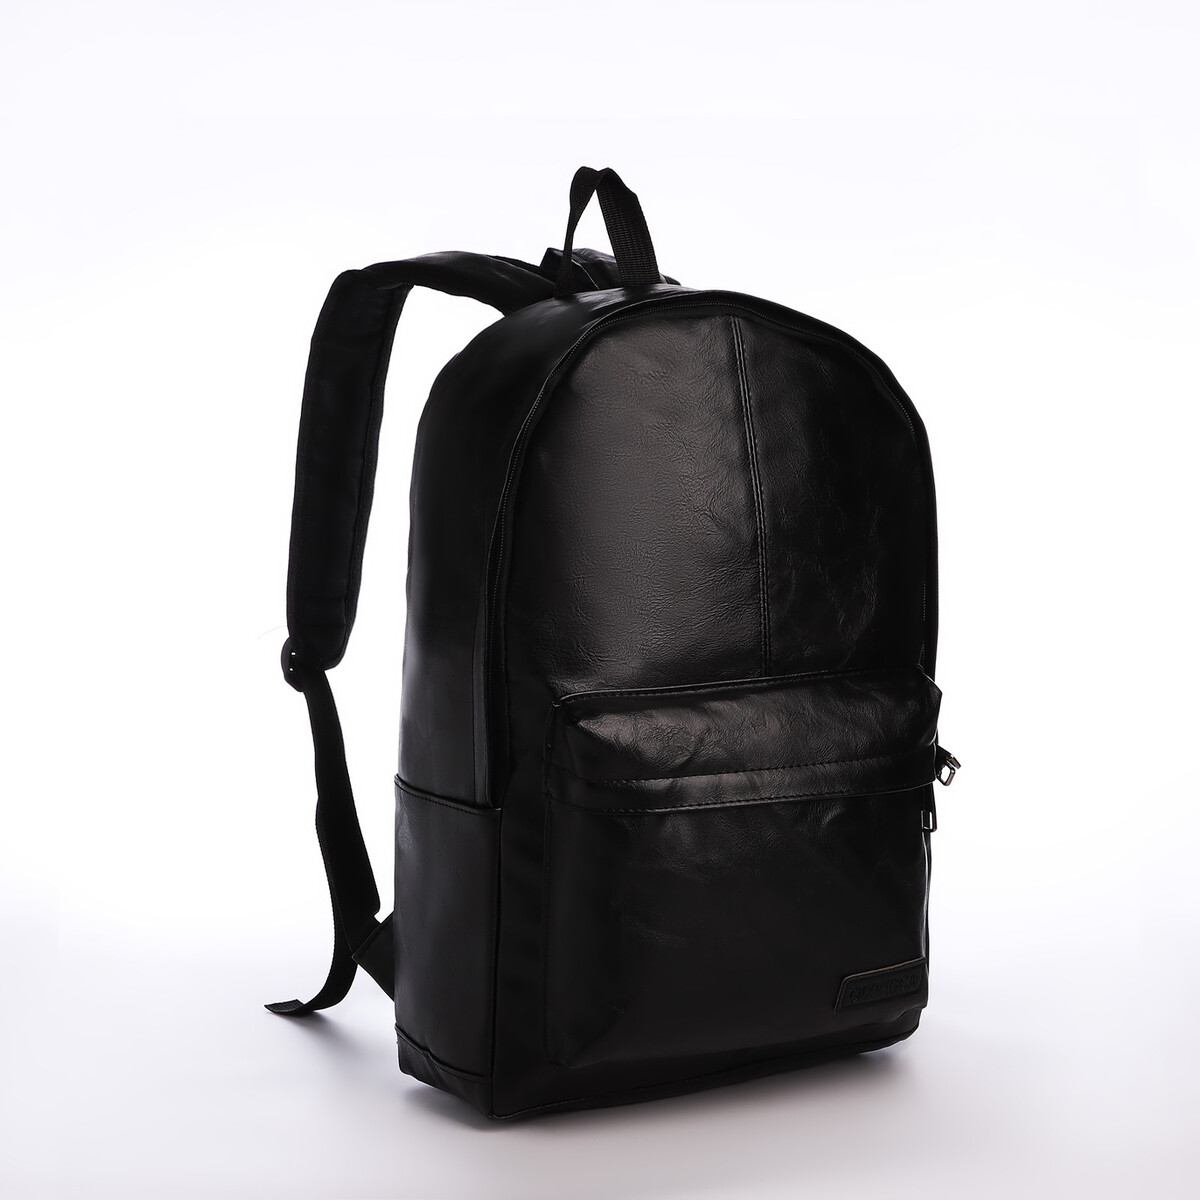 Рюкзак городской из искусственной кожи на молнии, 3 кармана, цвет черный рюкзак женский городской textura